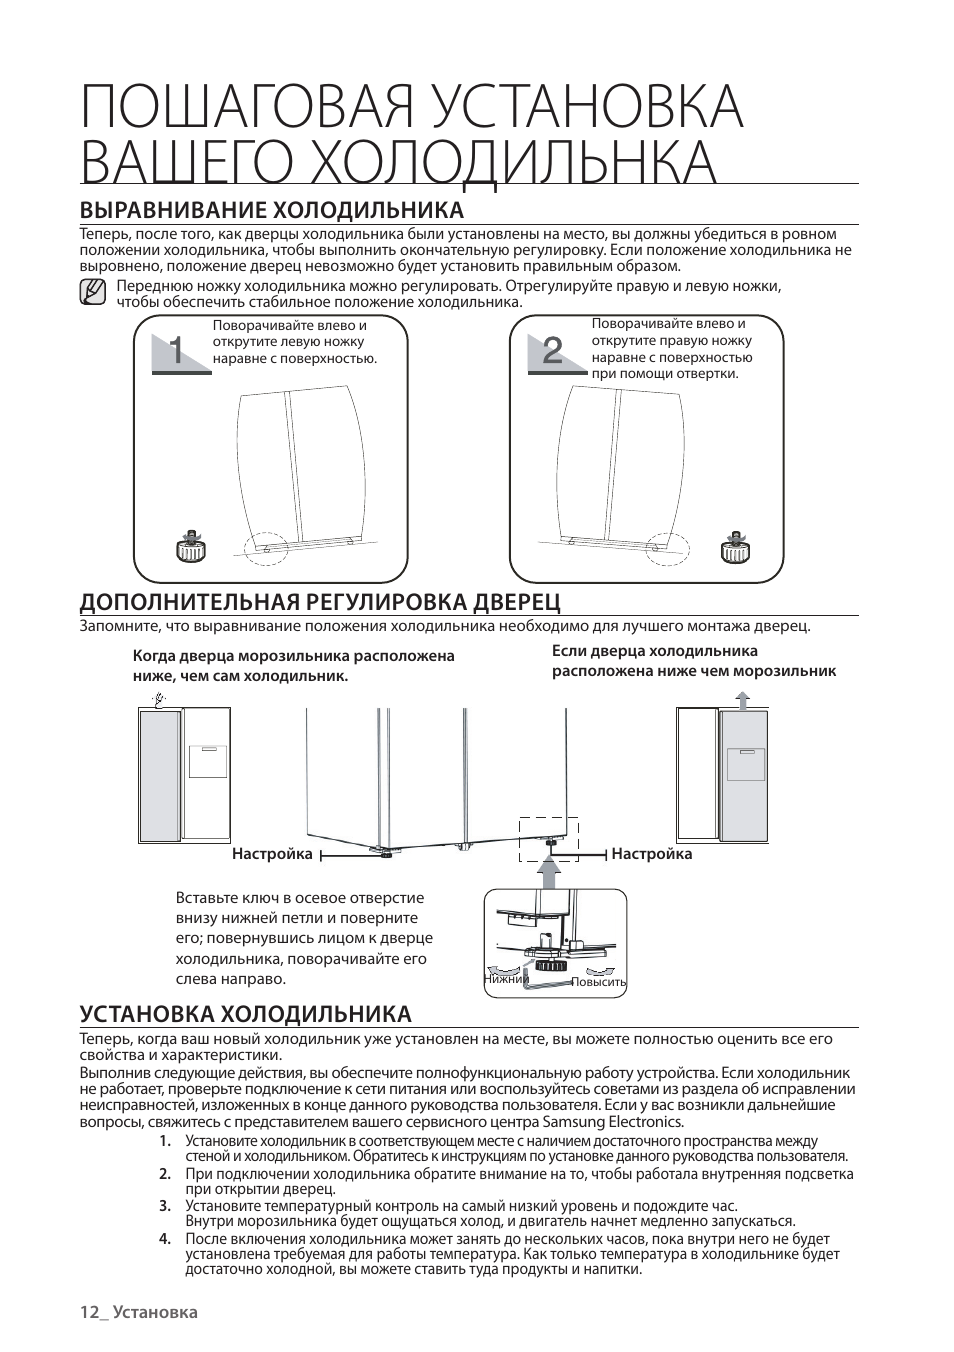 Требования и инструкция, как правильно установить холодильник